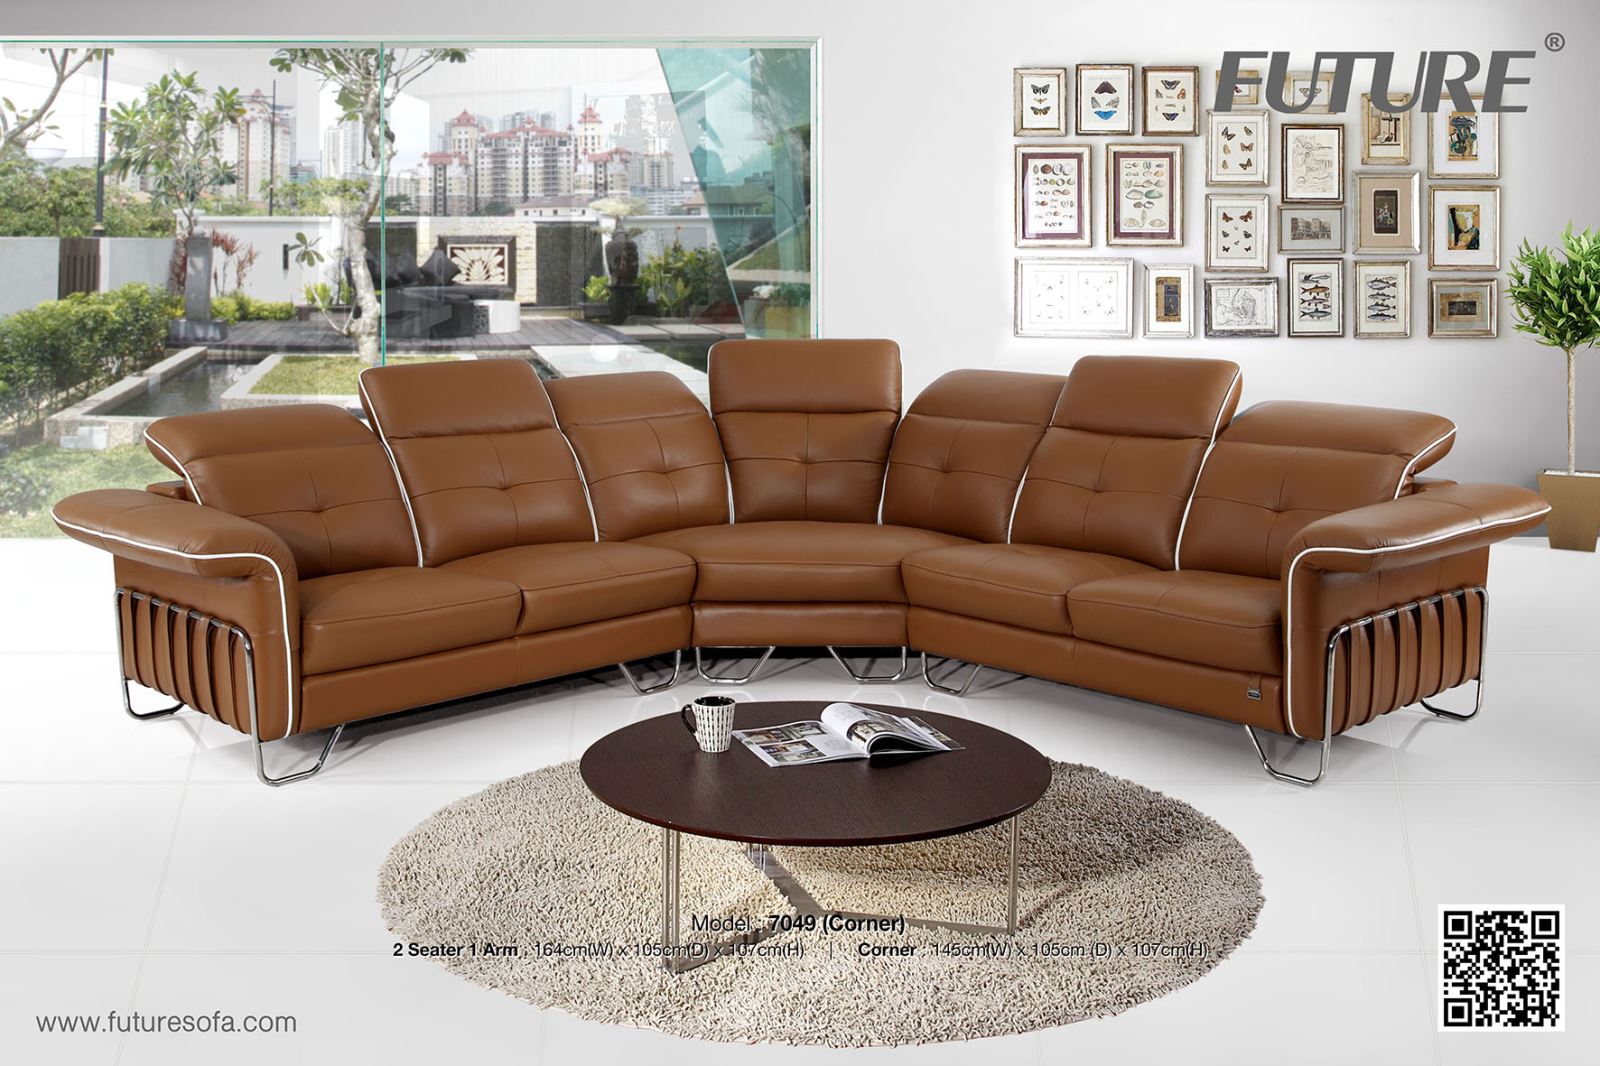 Chọn lựa bàn ghế sofa chung cư để phù hợp với từng thiết kế - Ảnh 4